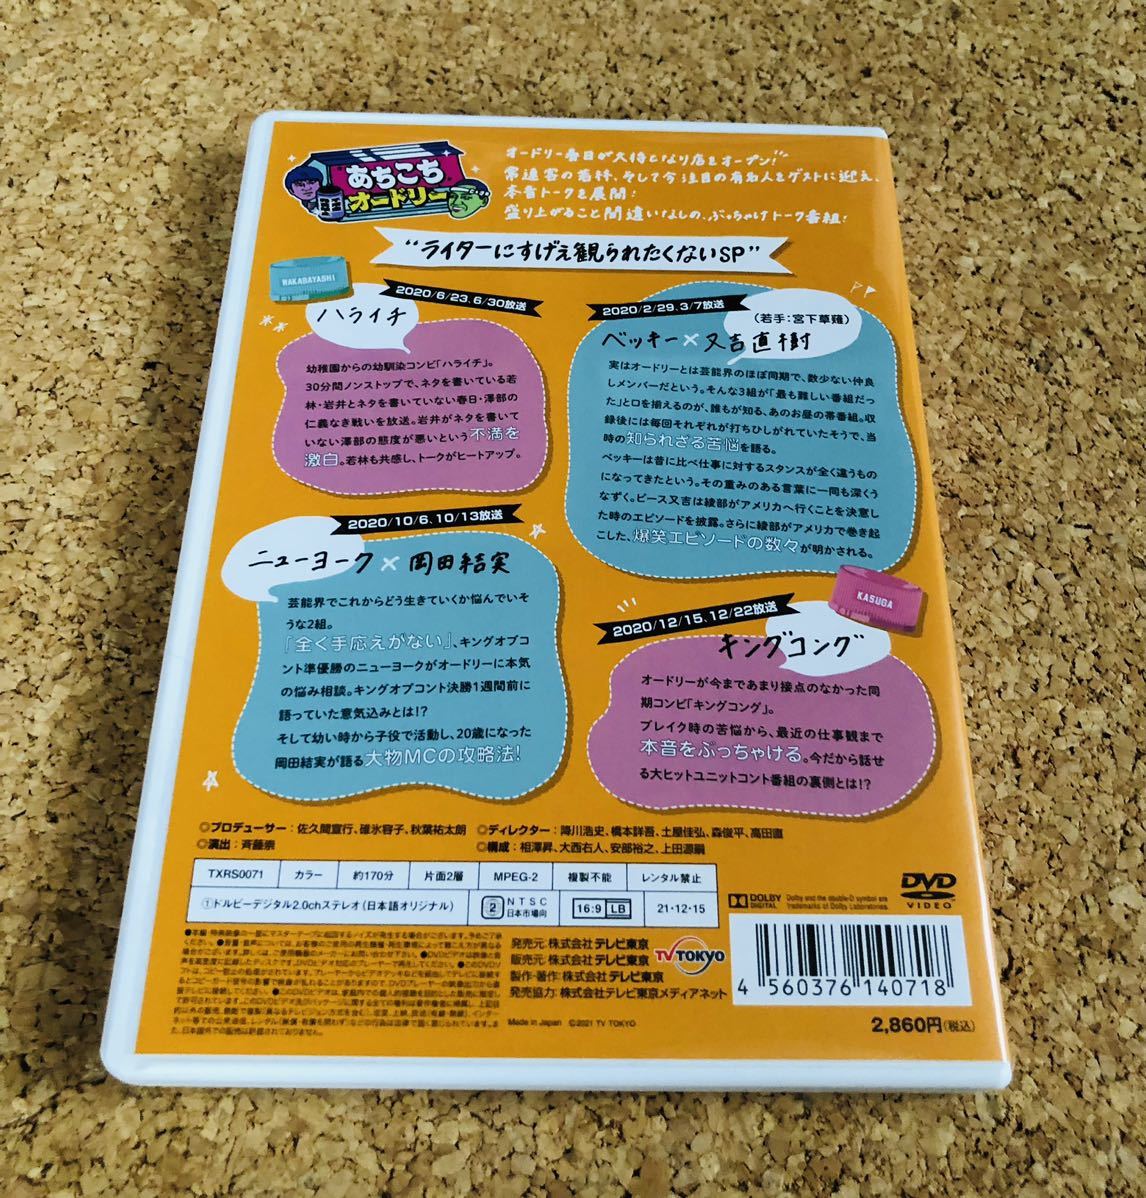 あちこちオードリー DVD 3巻セット 1回再生のみ(お笑い、バラエティ 